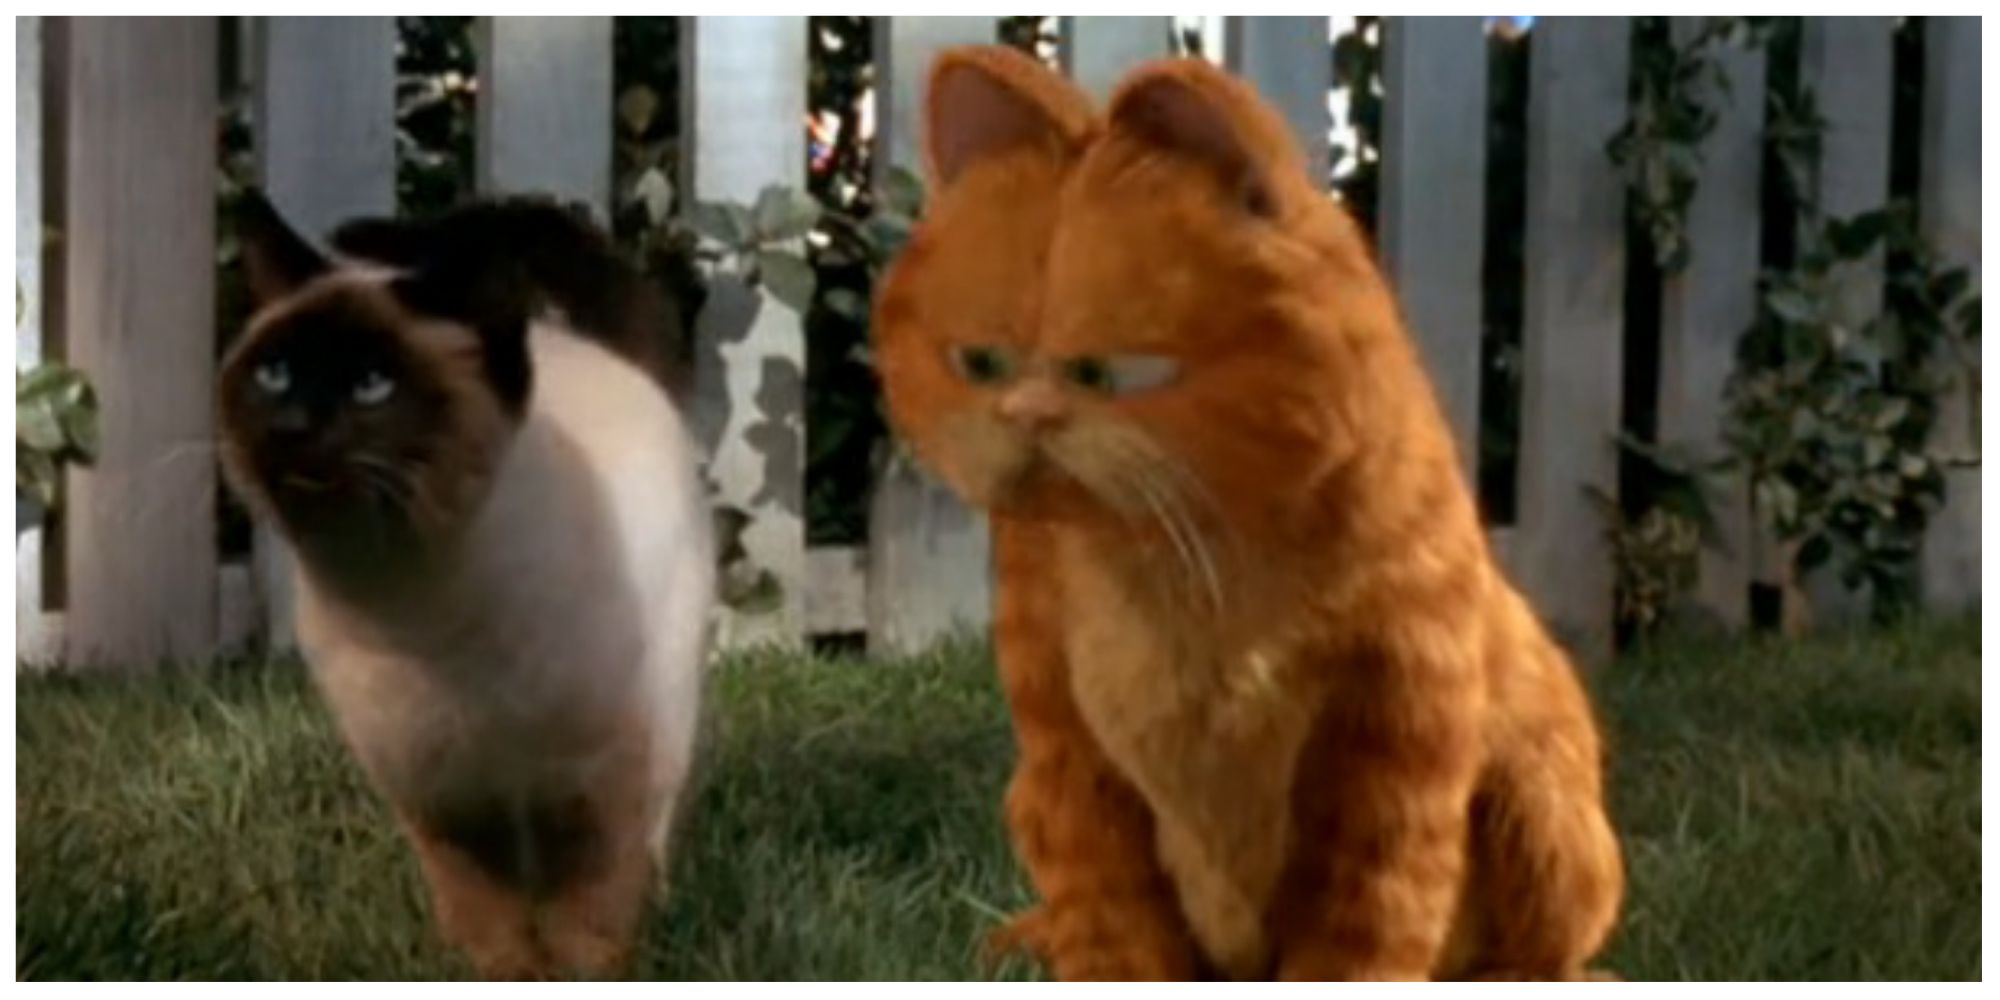 Garfield and Nermal in Garfield (2004)